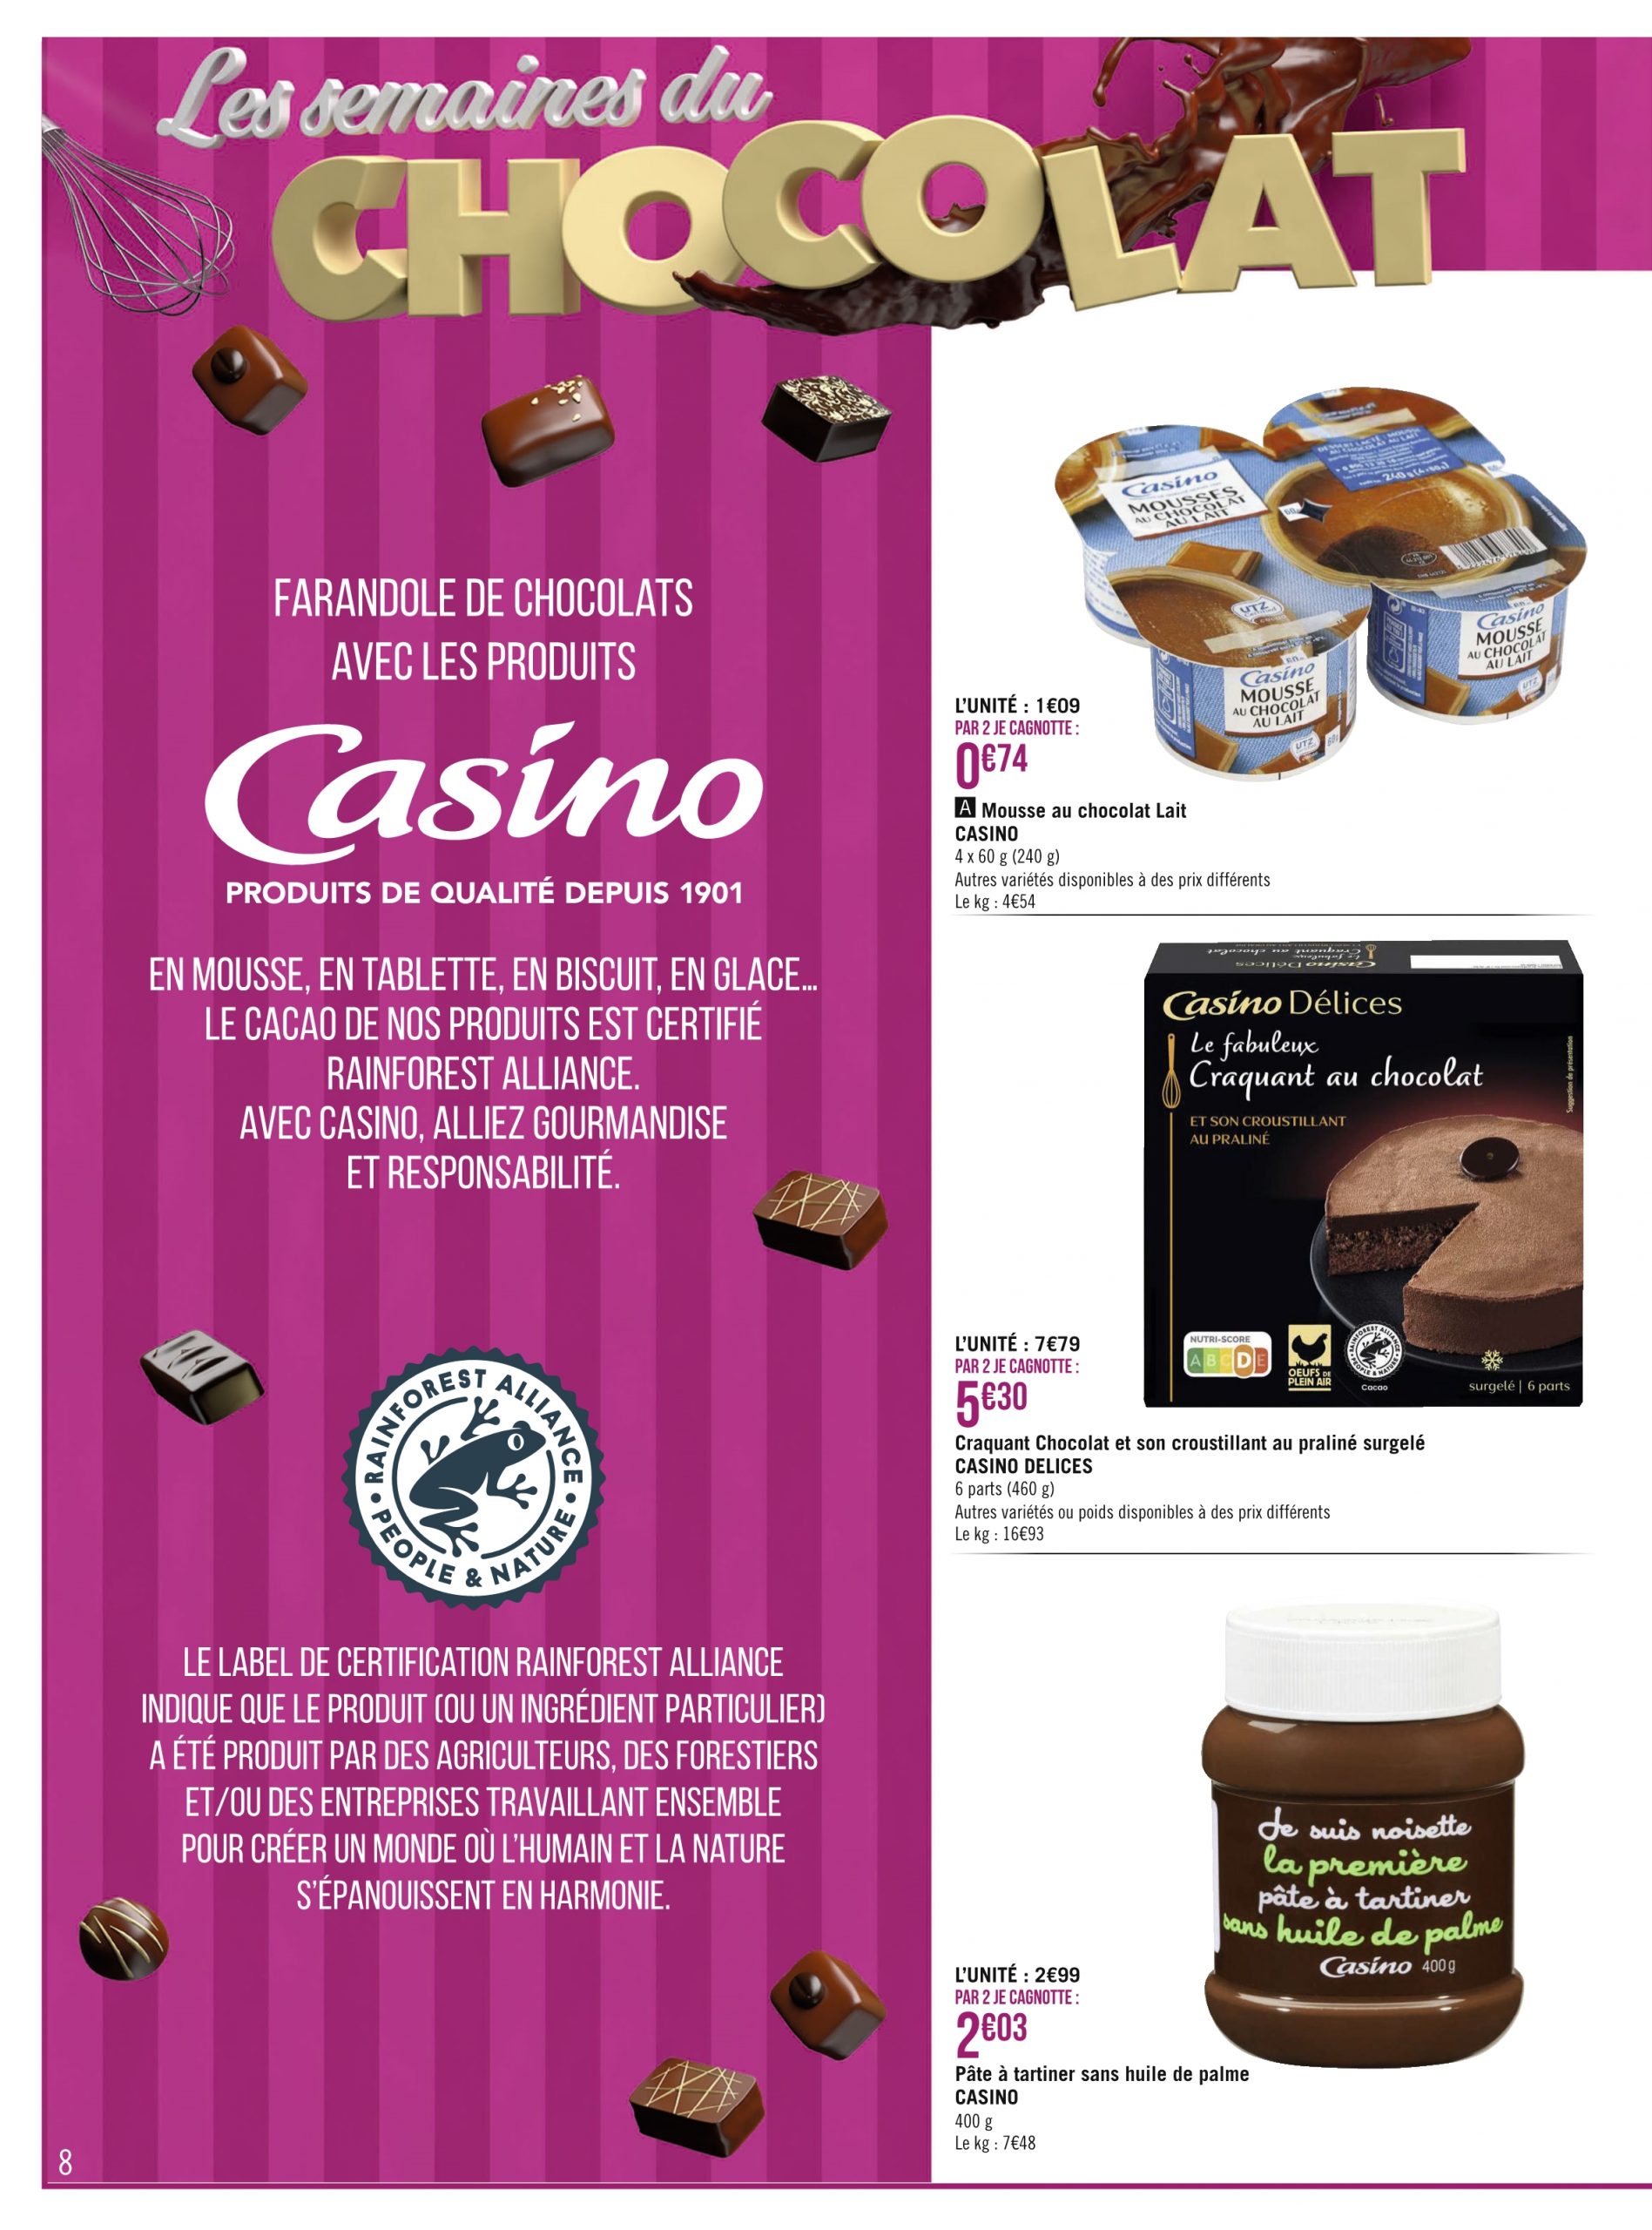 Promo Chocolat LINDT Lindor Lait chez Géant Casino